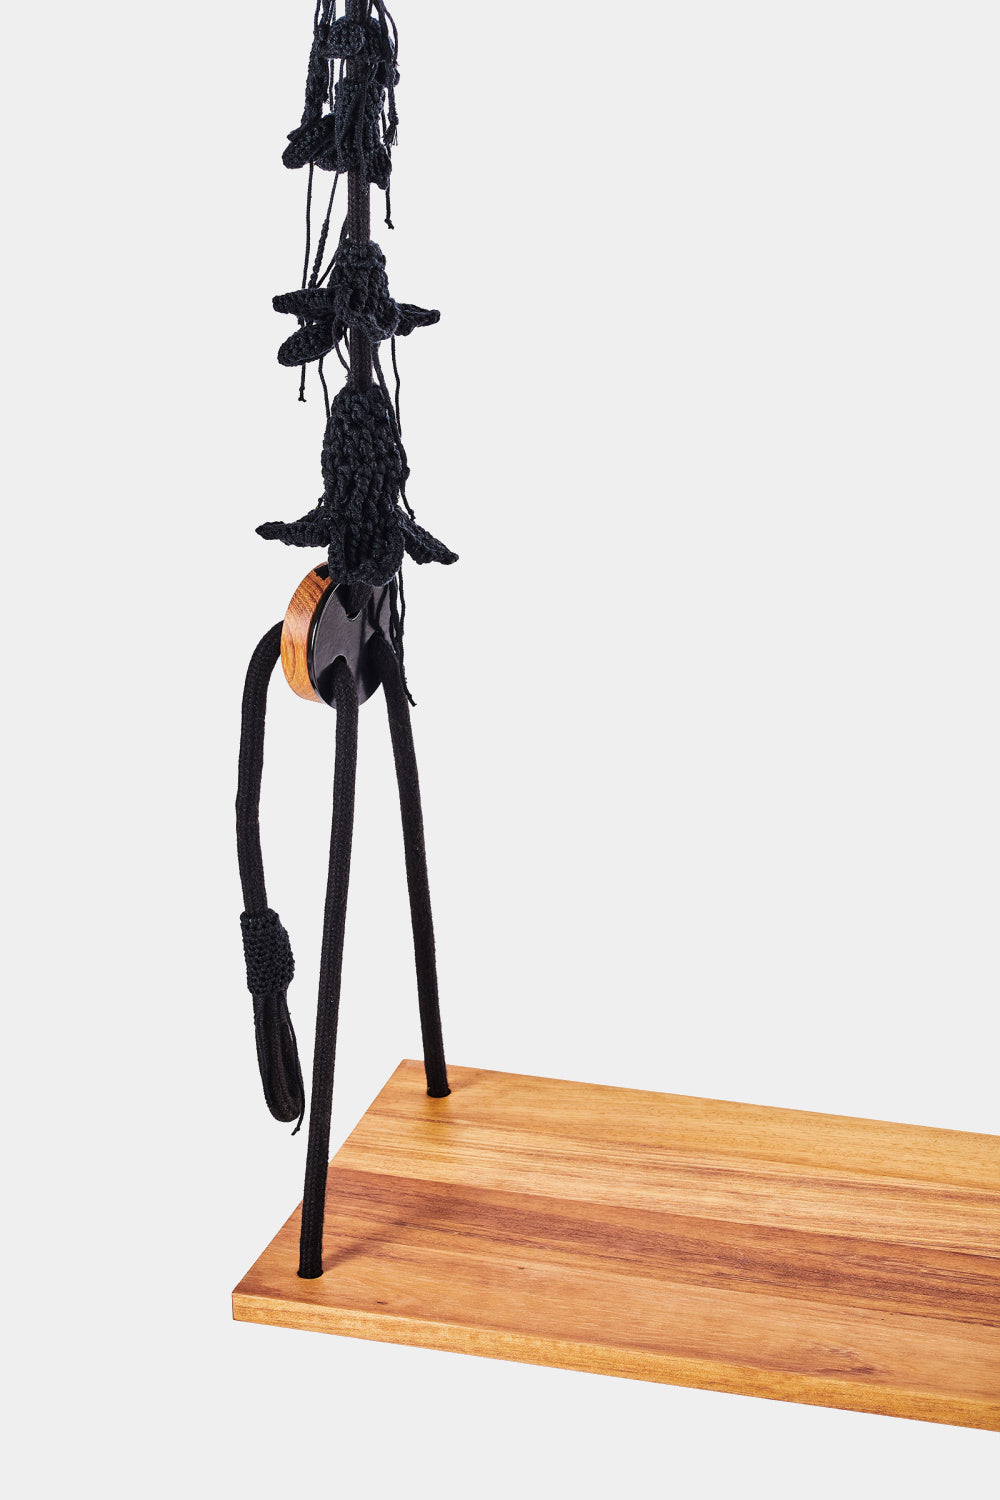 IOTA designová houpačka s dubovým sedátkem BLACK